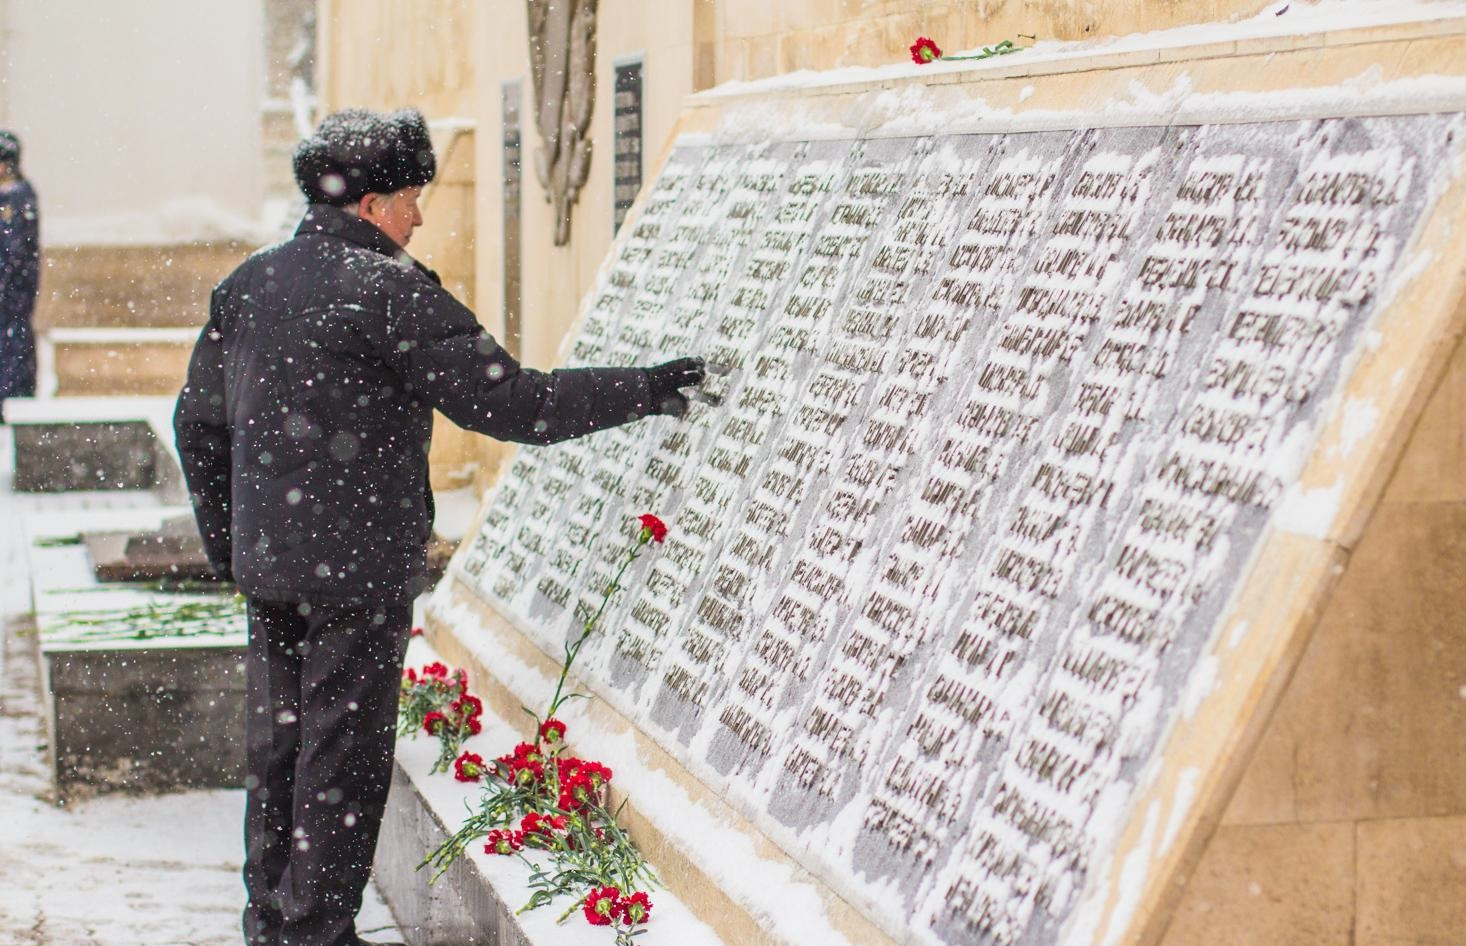 Родственники погибших каждый год приходят на место трагедии, чтобы почтить их память